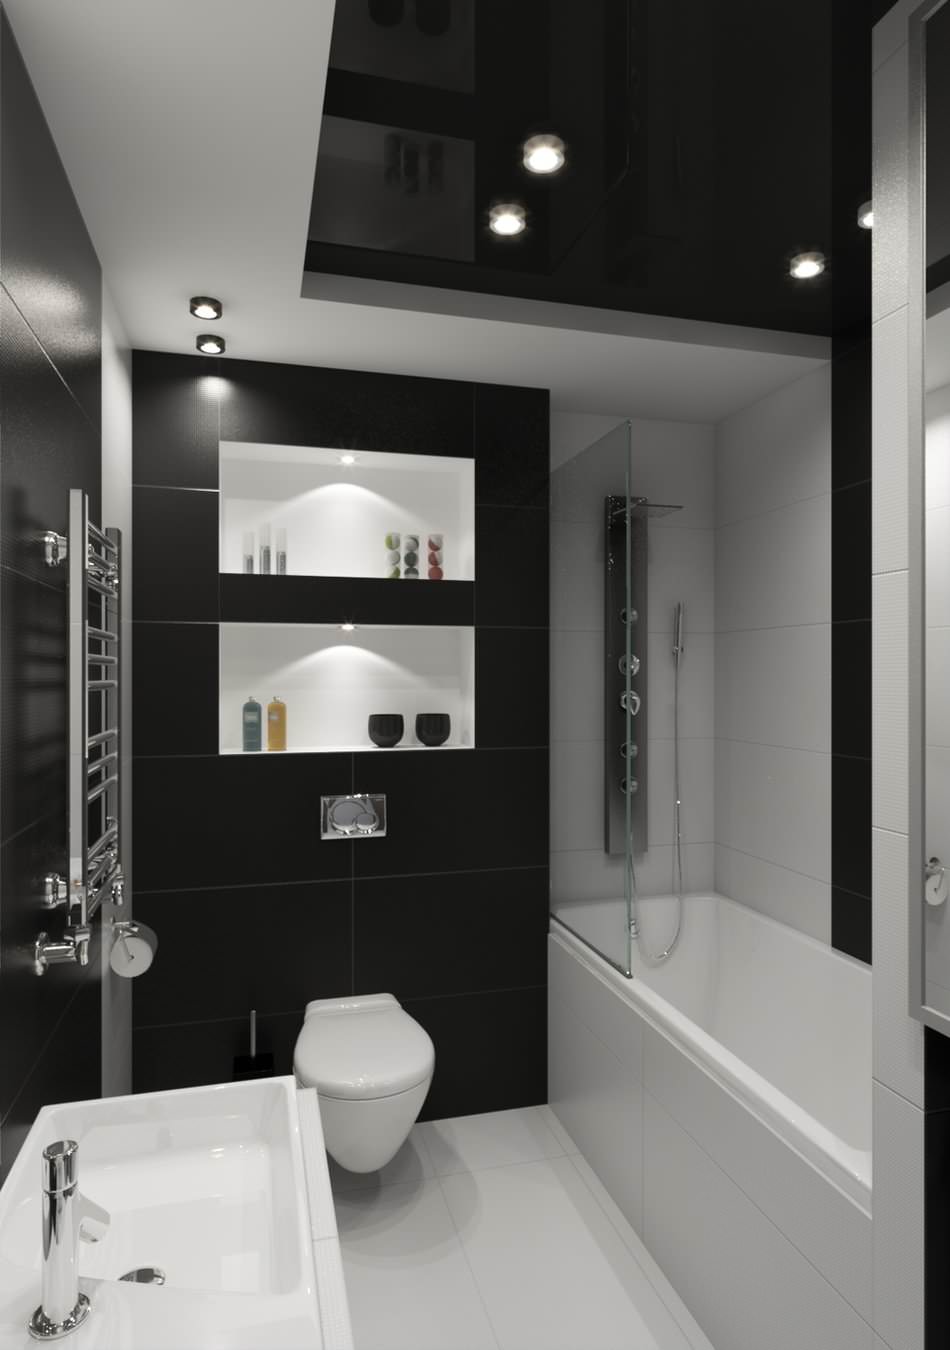 Phòng tắm trần cao trắng đen